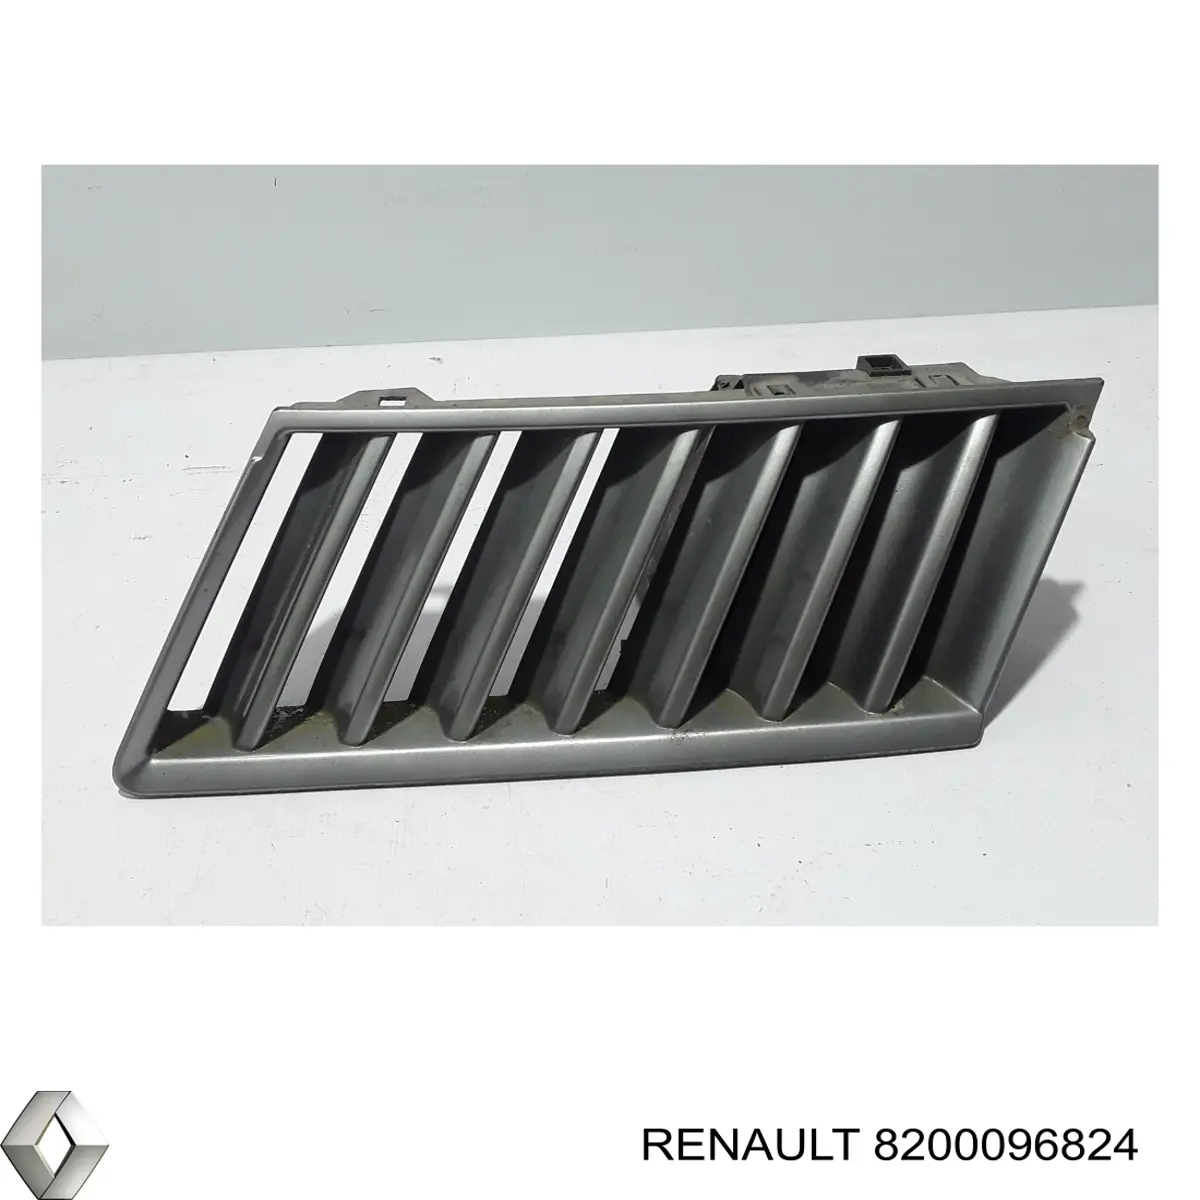 7701207964 Renault (RVI) grelha do radiador esquerda